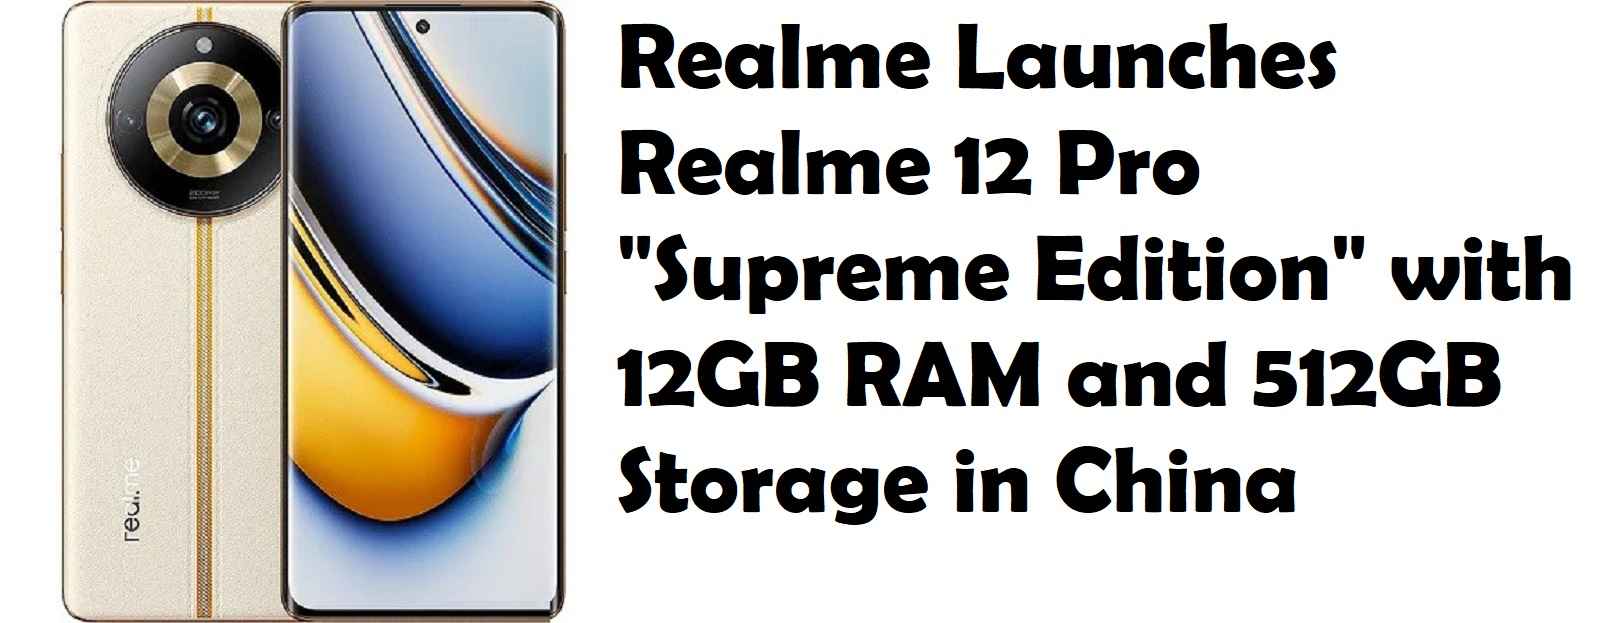 Realme Launches Realme 12 Pro